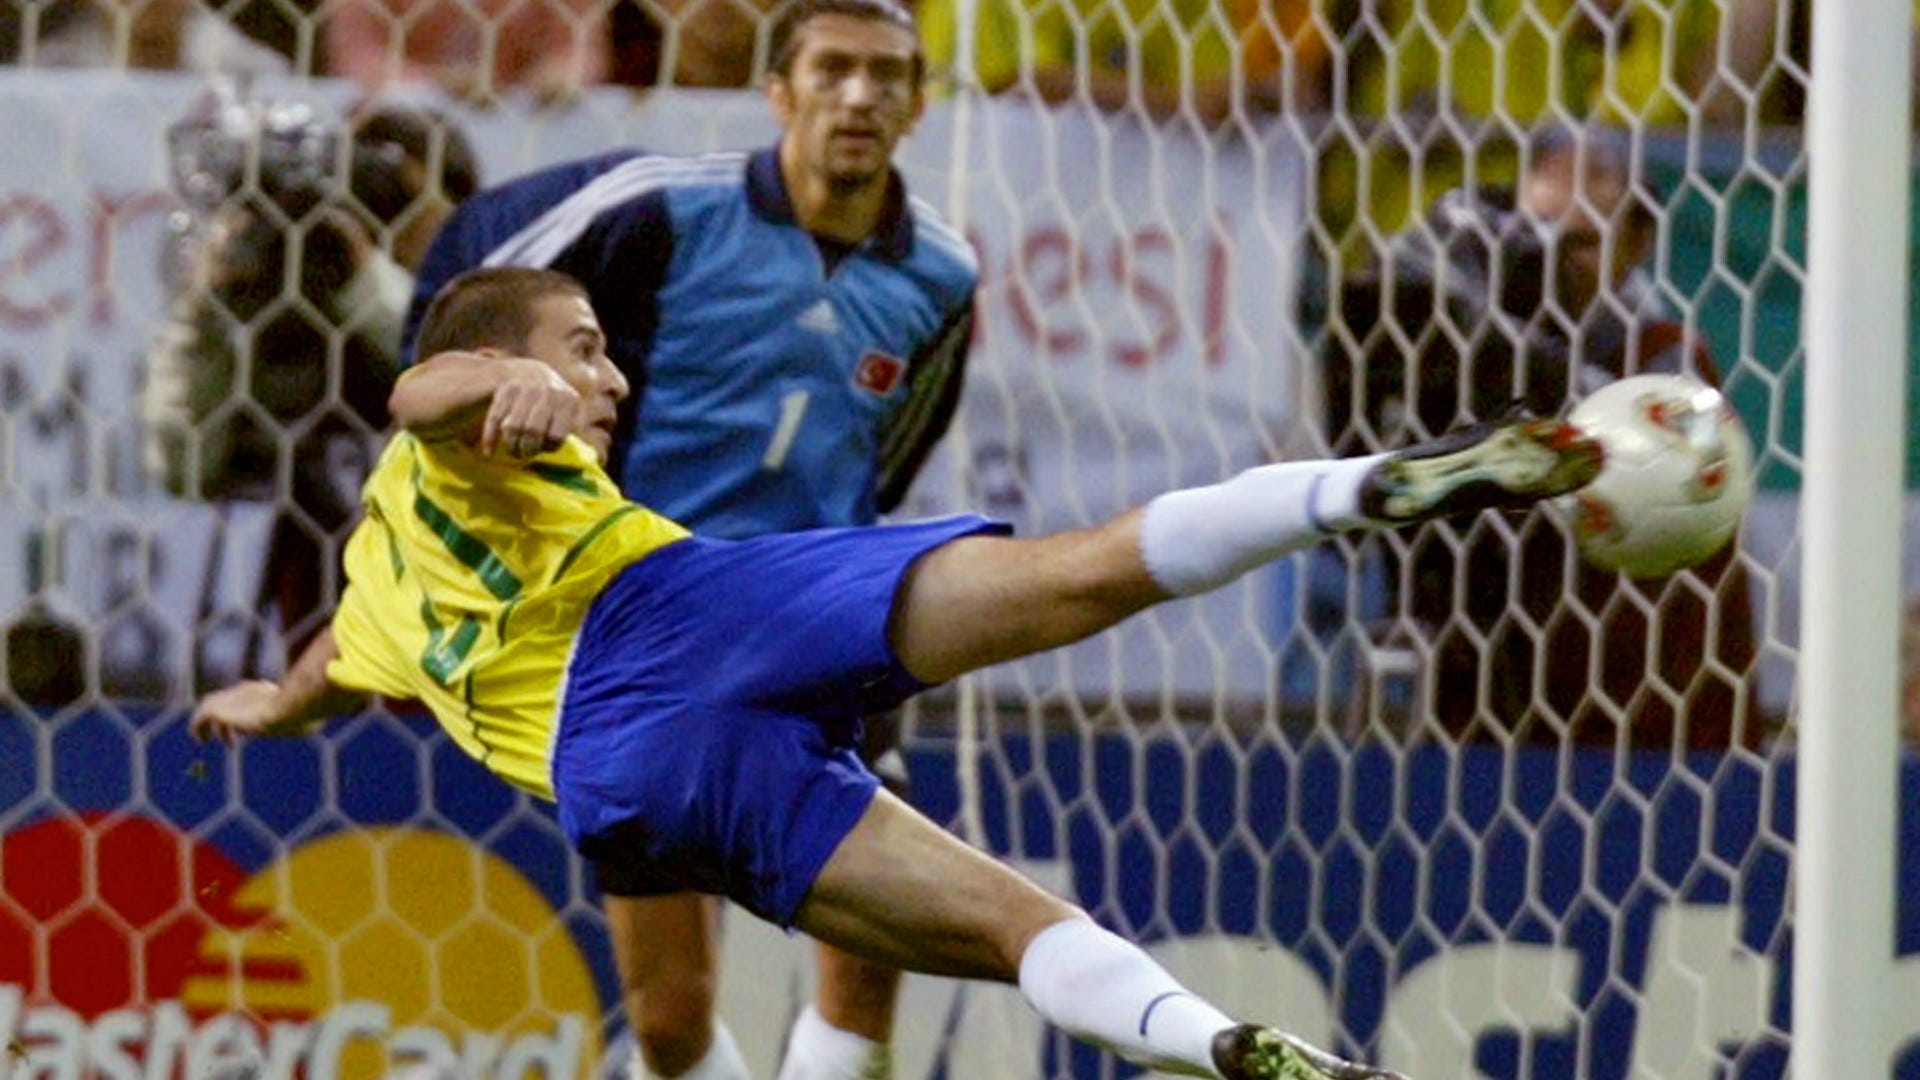 Brasil Os Jogadores Campeões Da Copa Do Mundo 2002 Em Detalhes E Estatísticas Brasil